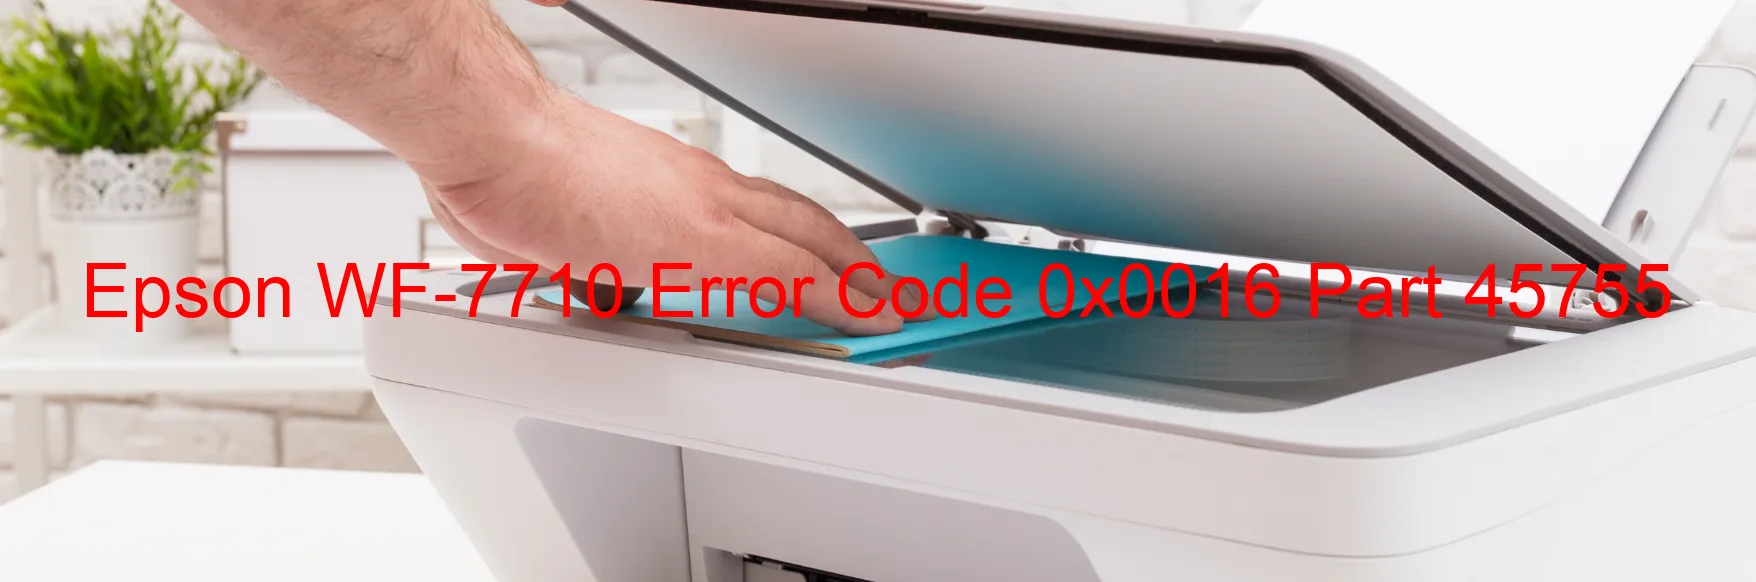 Epson WF-7710 Error Code 0x0016 Part 45755